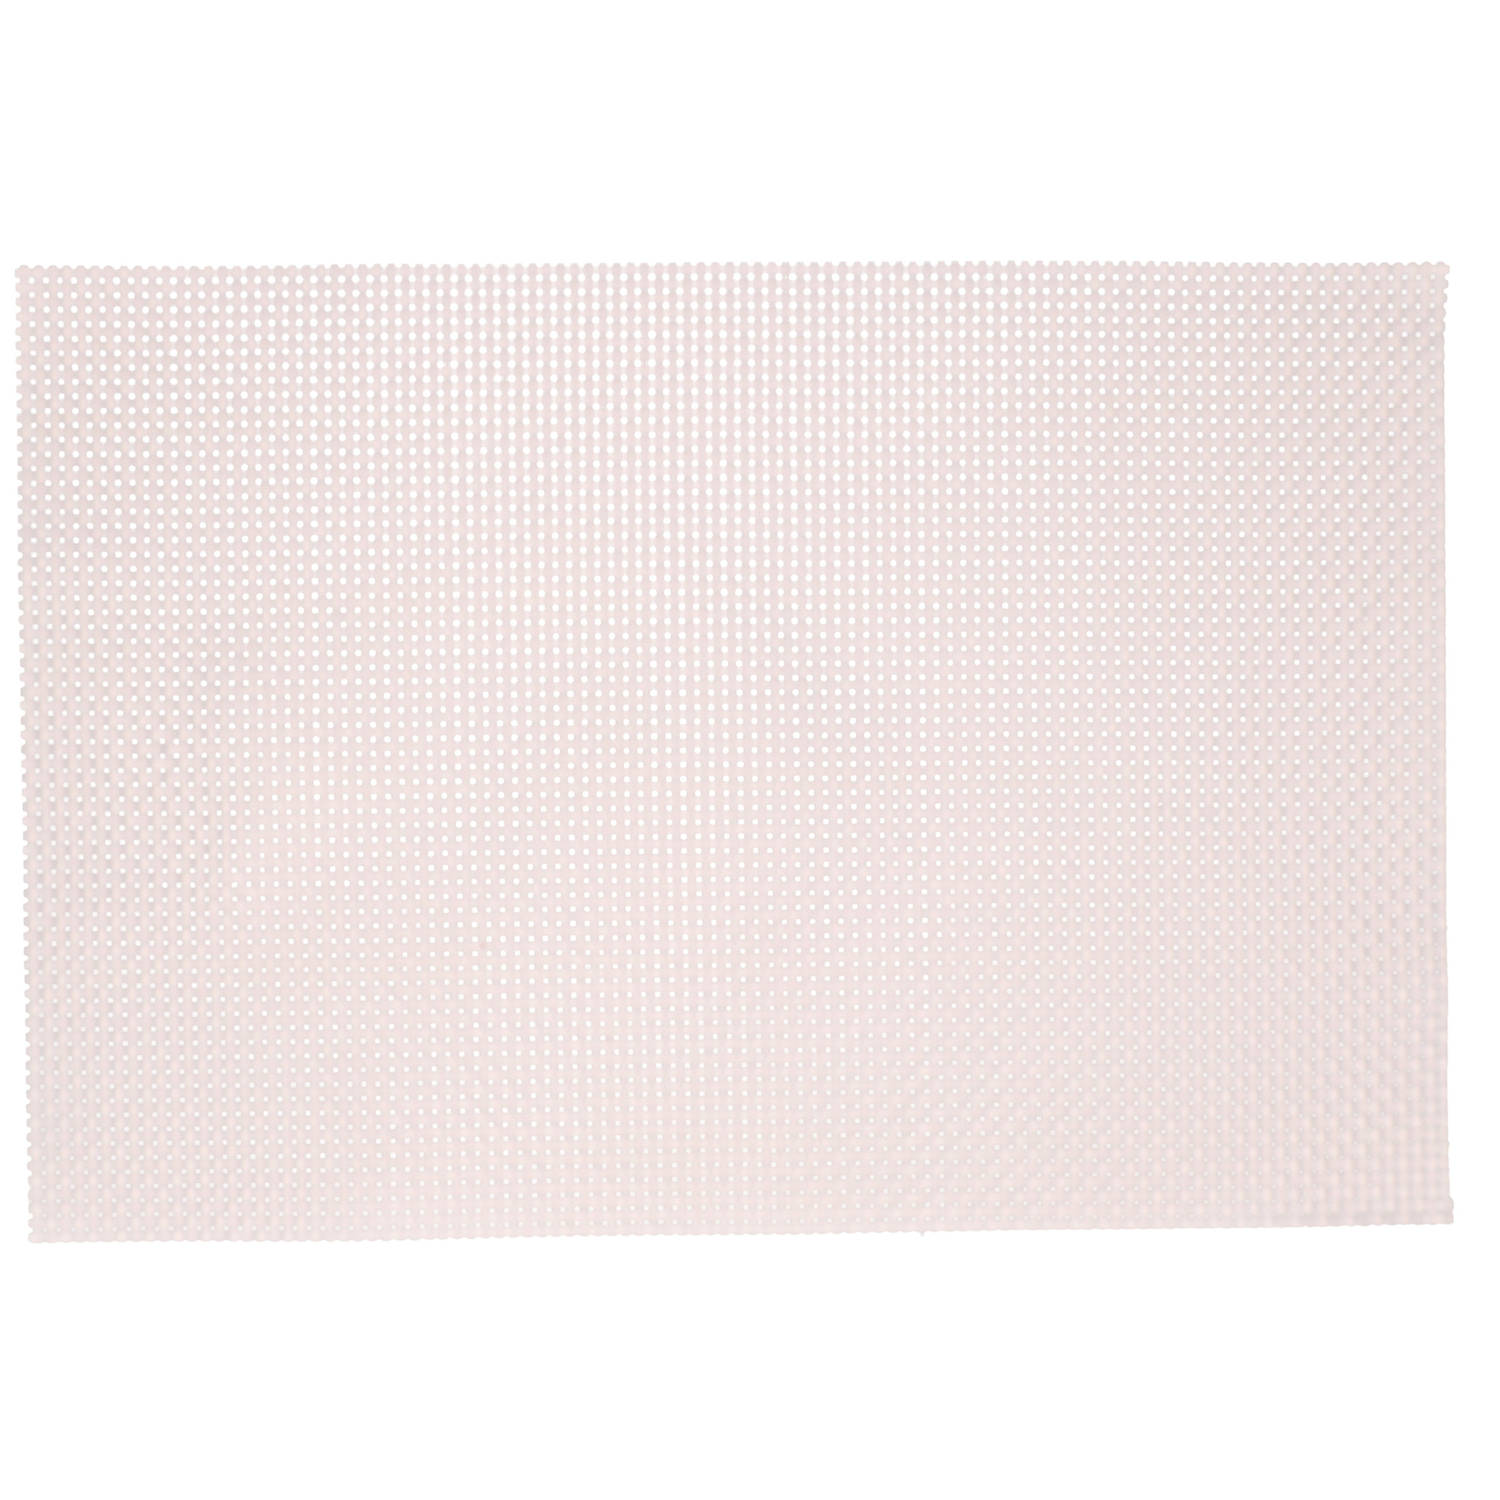 1x Rechthoekige onderleggers/placemats voor borden roze parelmoer geweven print 29 x 43 cm - Placemats